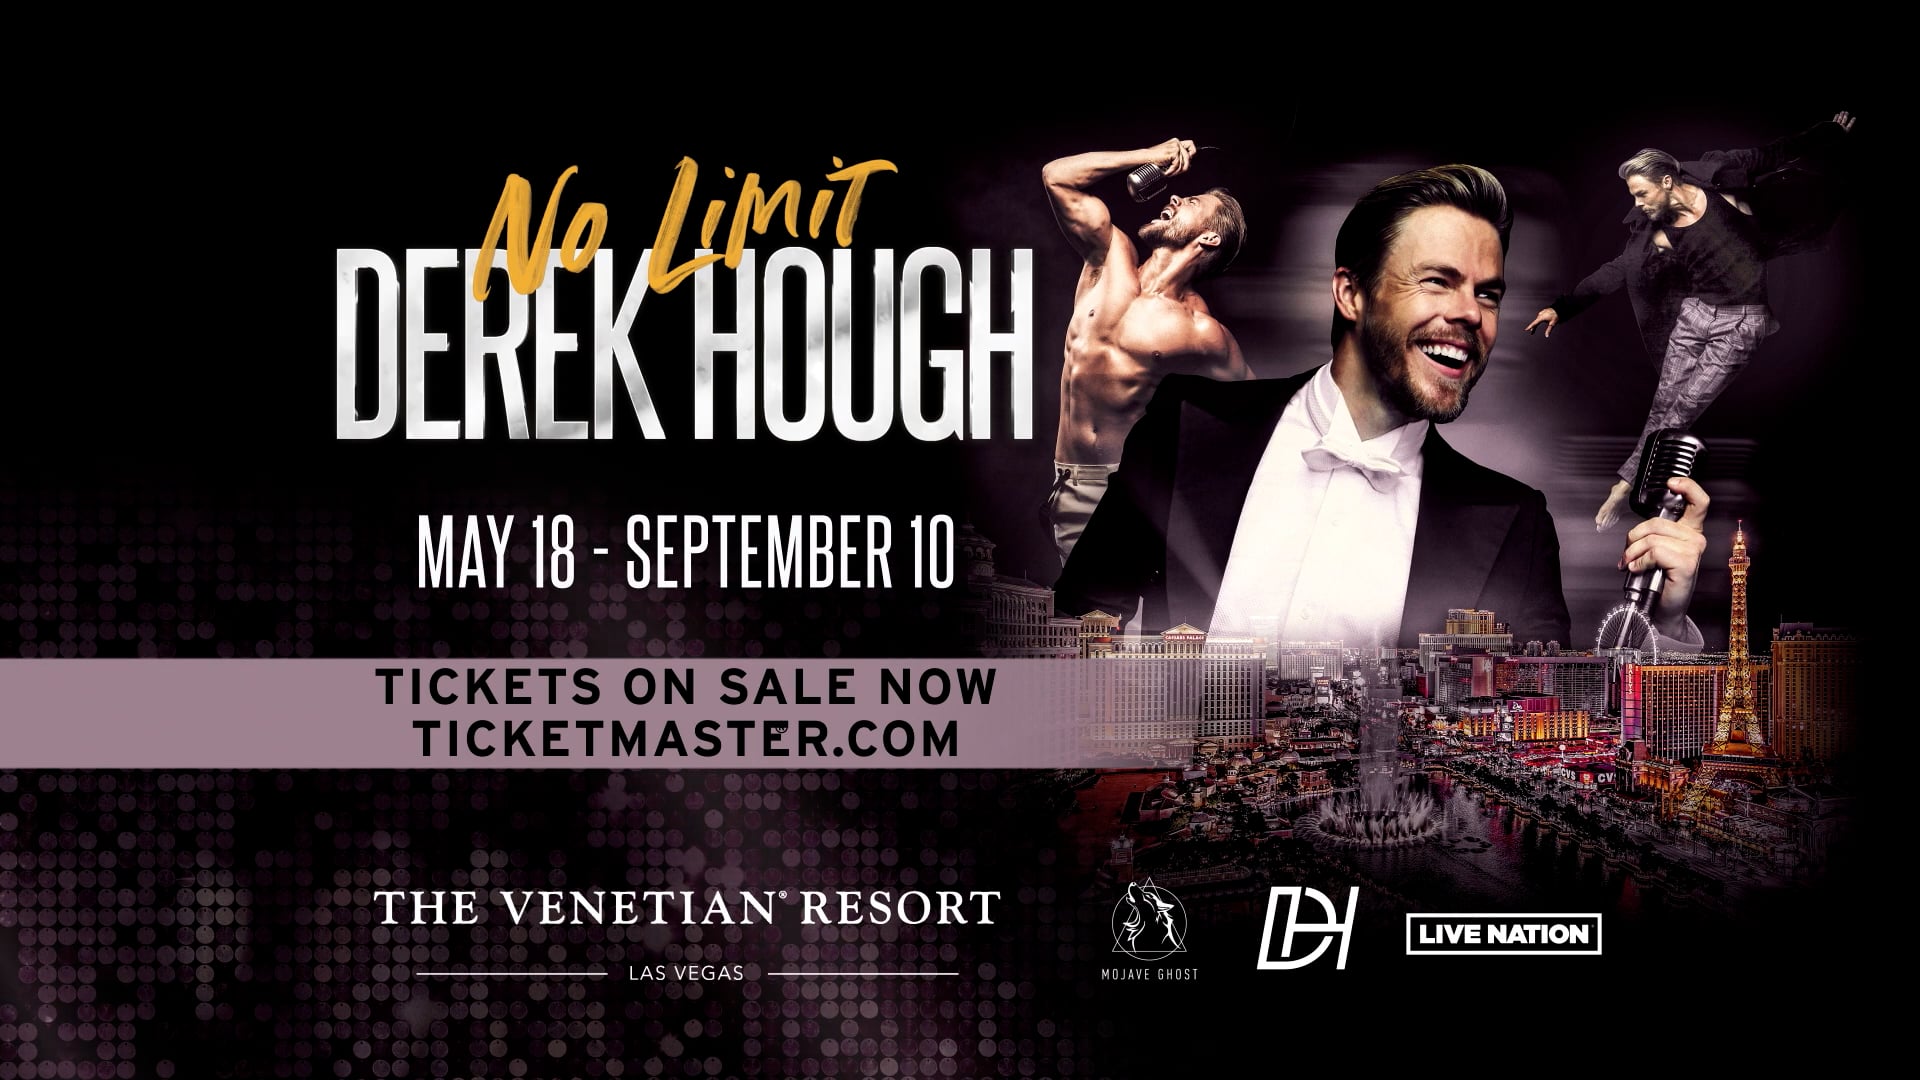 Derek Hough Vegas Residency 2022 on Vimeo